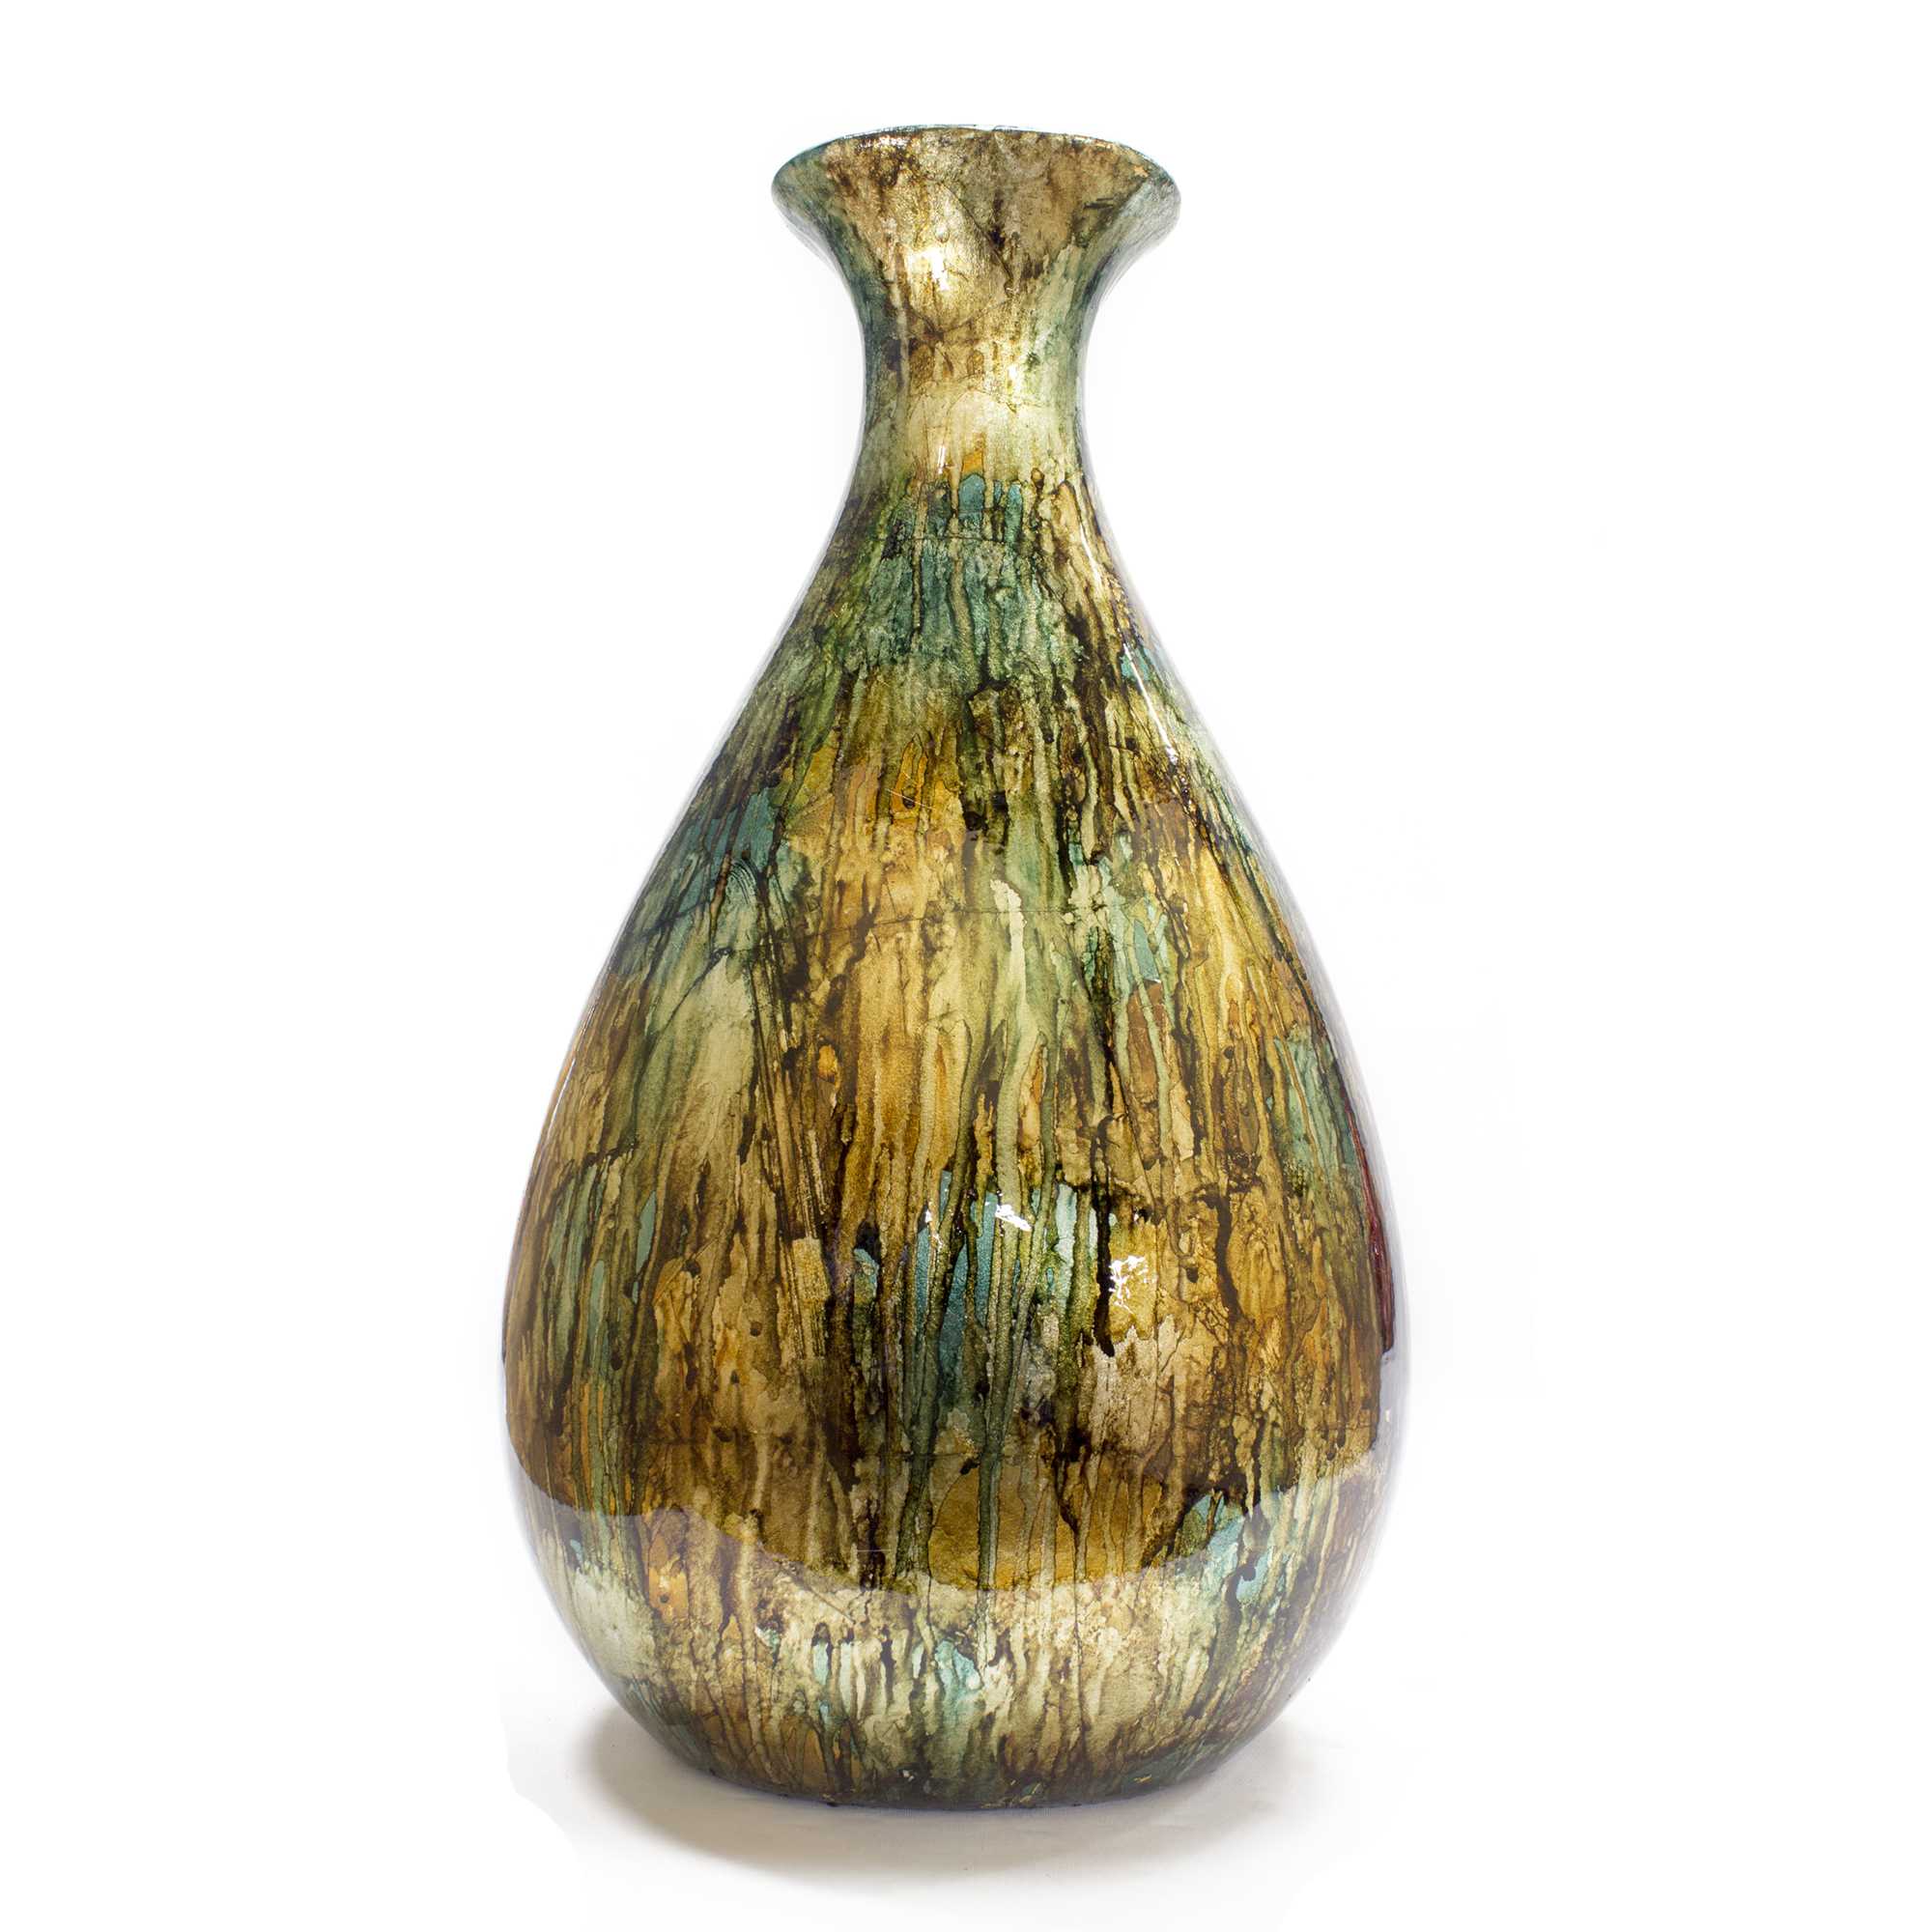 9" X 6.25" X 18.5" Turquoise Copper and Bronze Ceramic Floor Vase